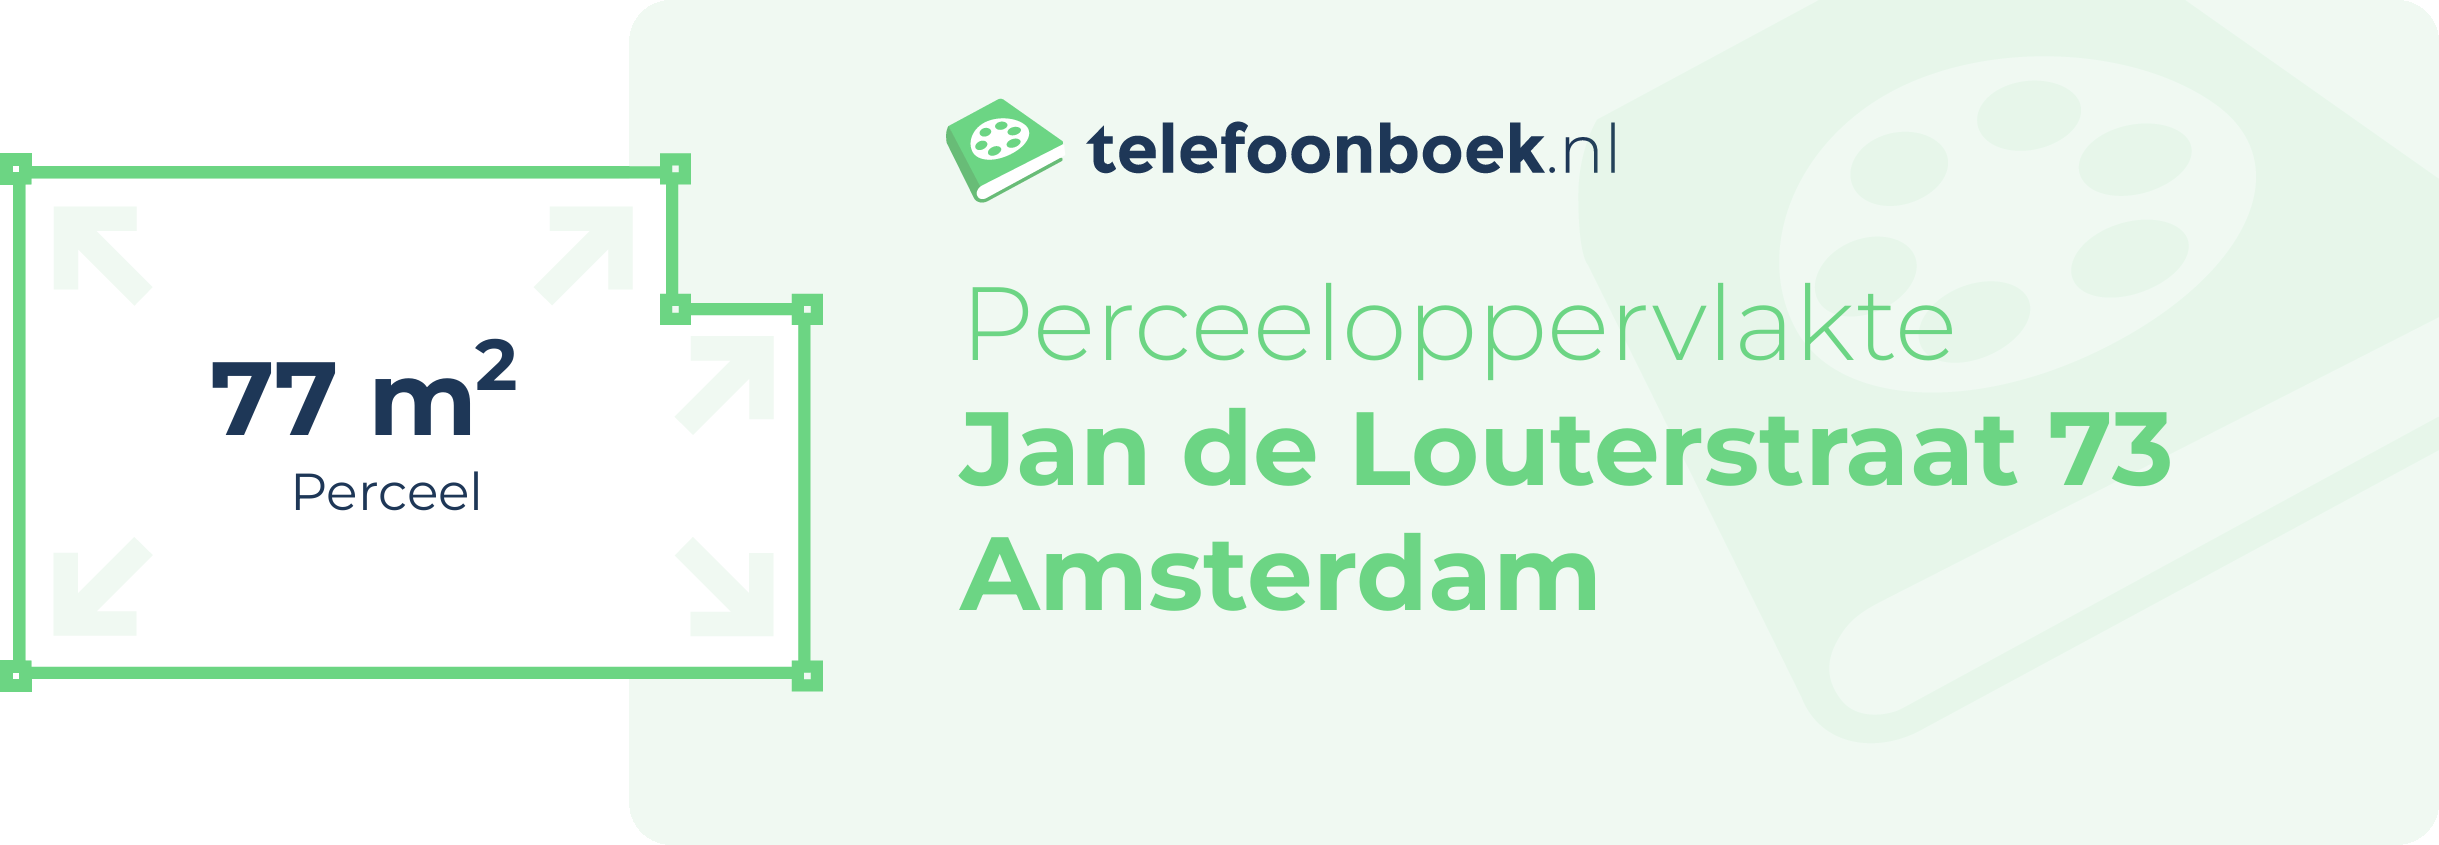 Perceeloppervlakte Jan De Louterstraat 73 Amsterdam